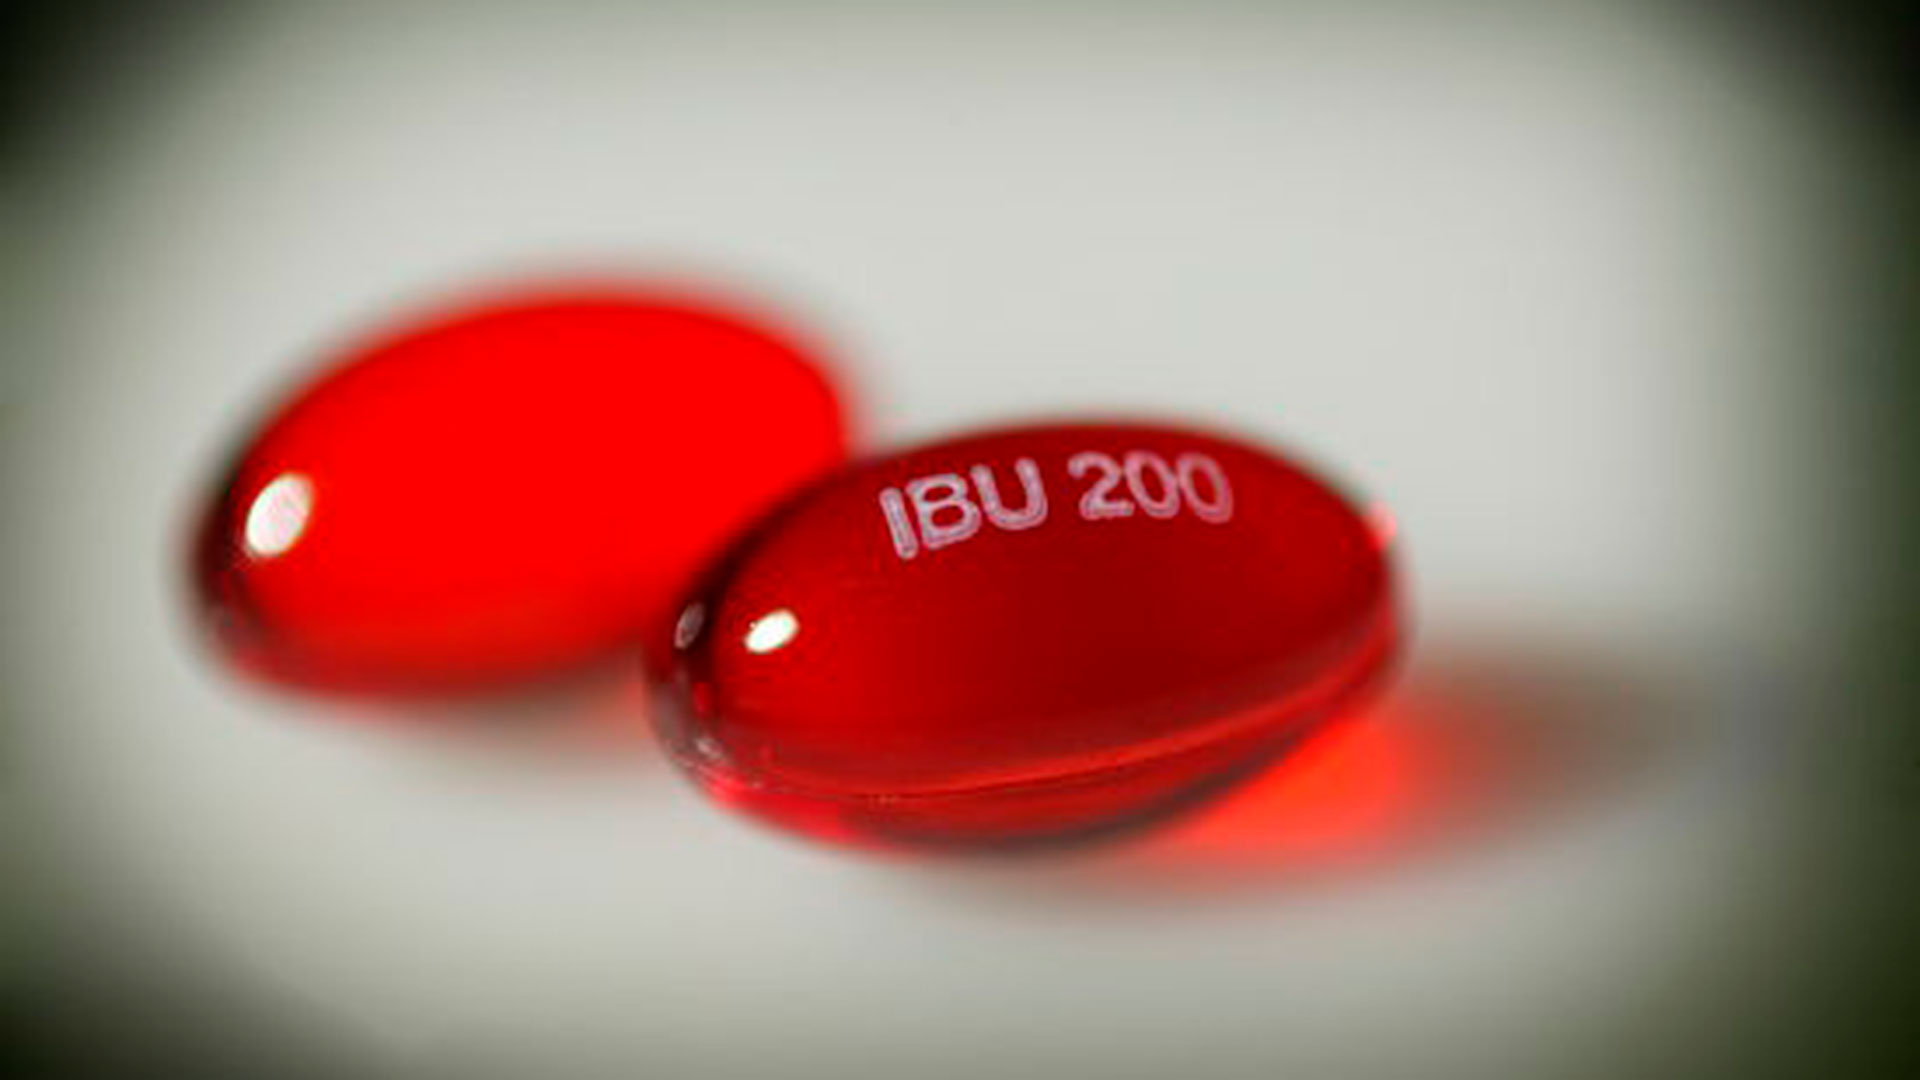 La Agencia Española de Medicamentos y Productos Sanitarios (AEMPS) informó en abril que “no existe ningún dato actualmente que permita afirmar un agravamiento de la infección por COVID-19 con el ibuprofeno (Shutterstock)